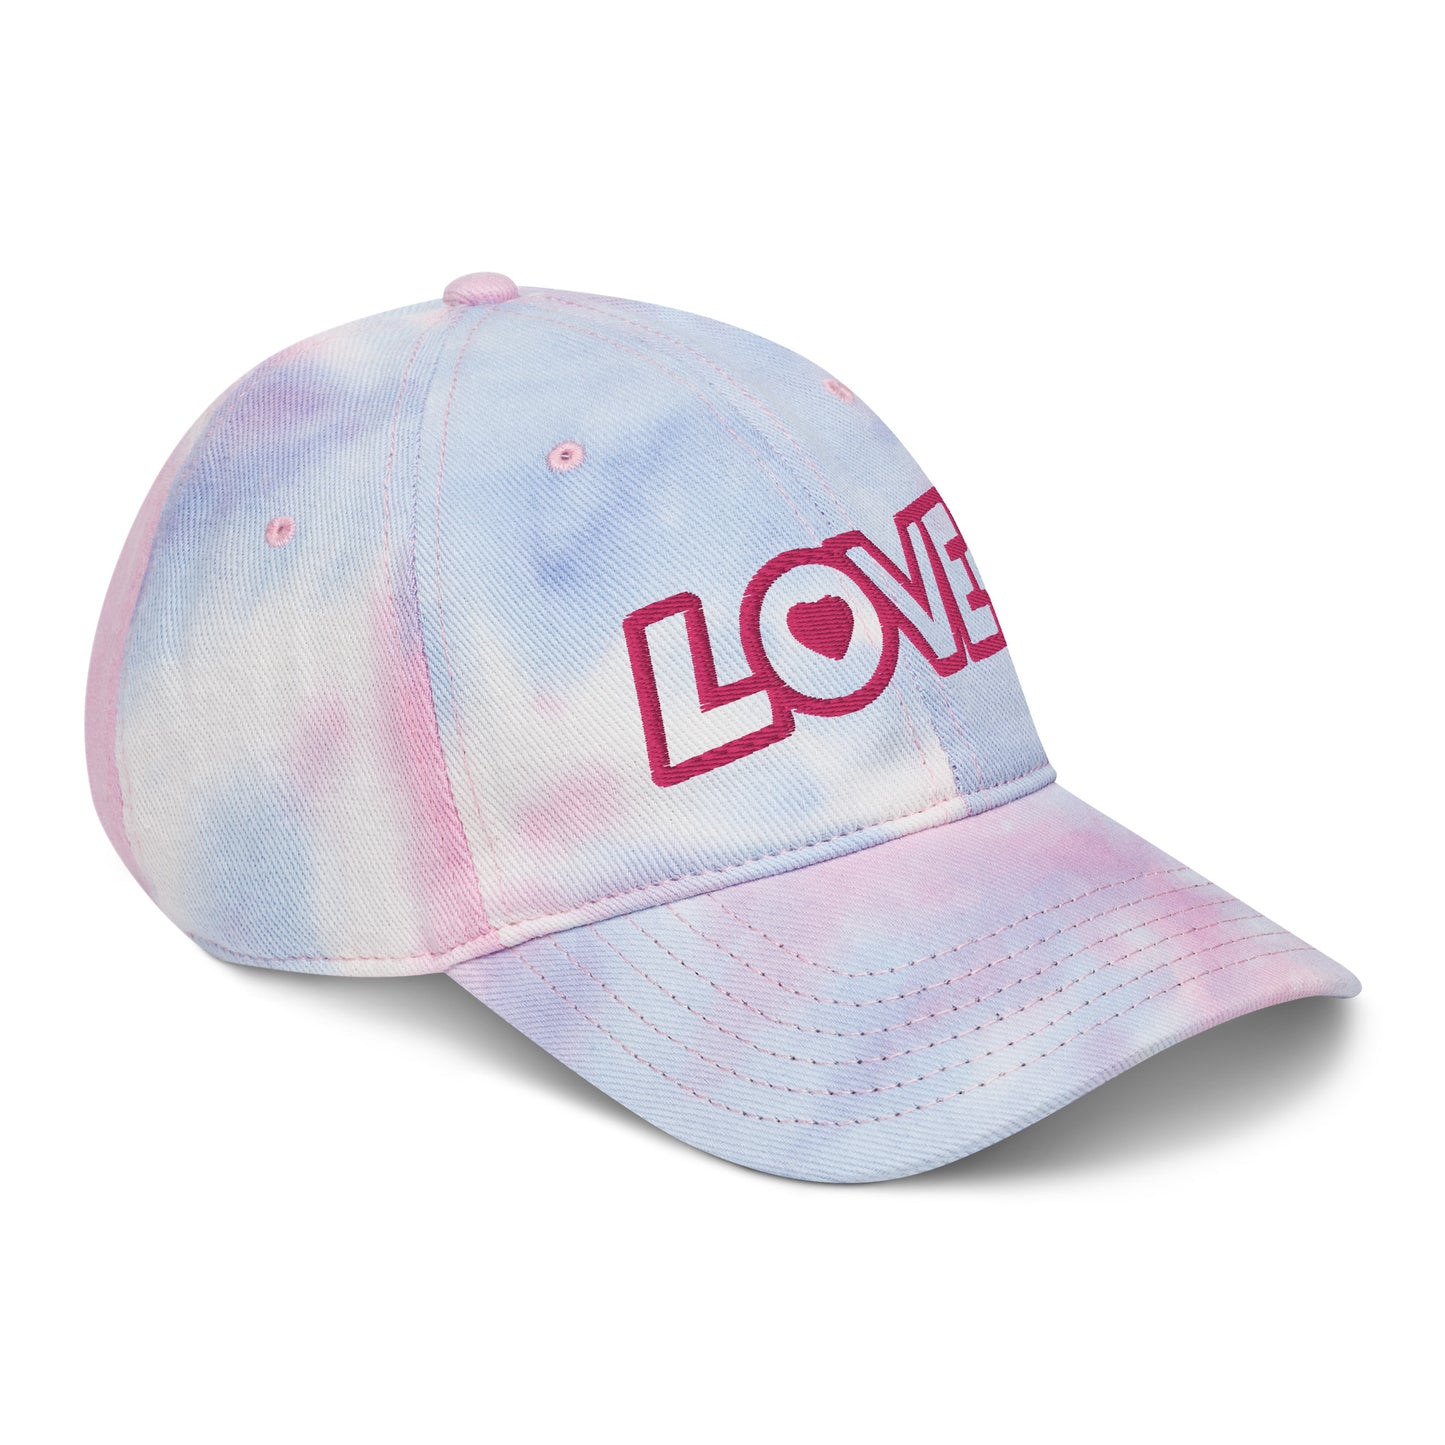 Love Tie Dye Hat